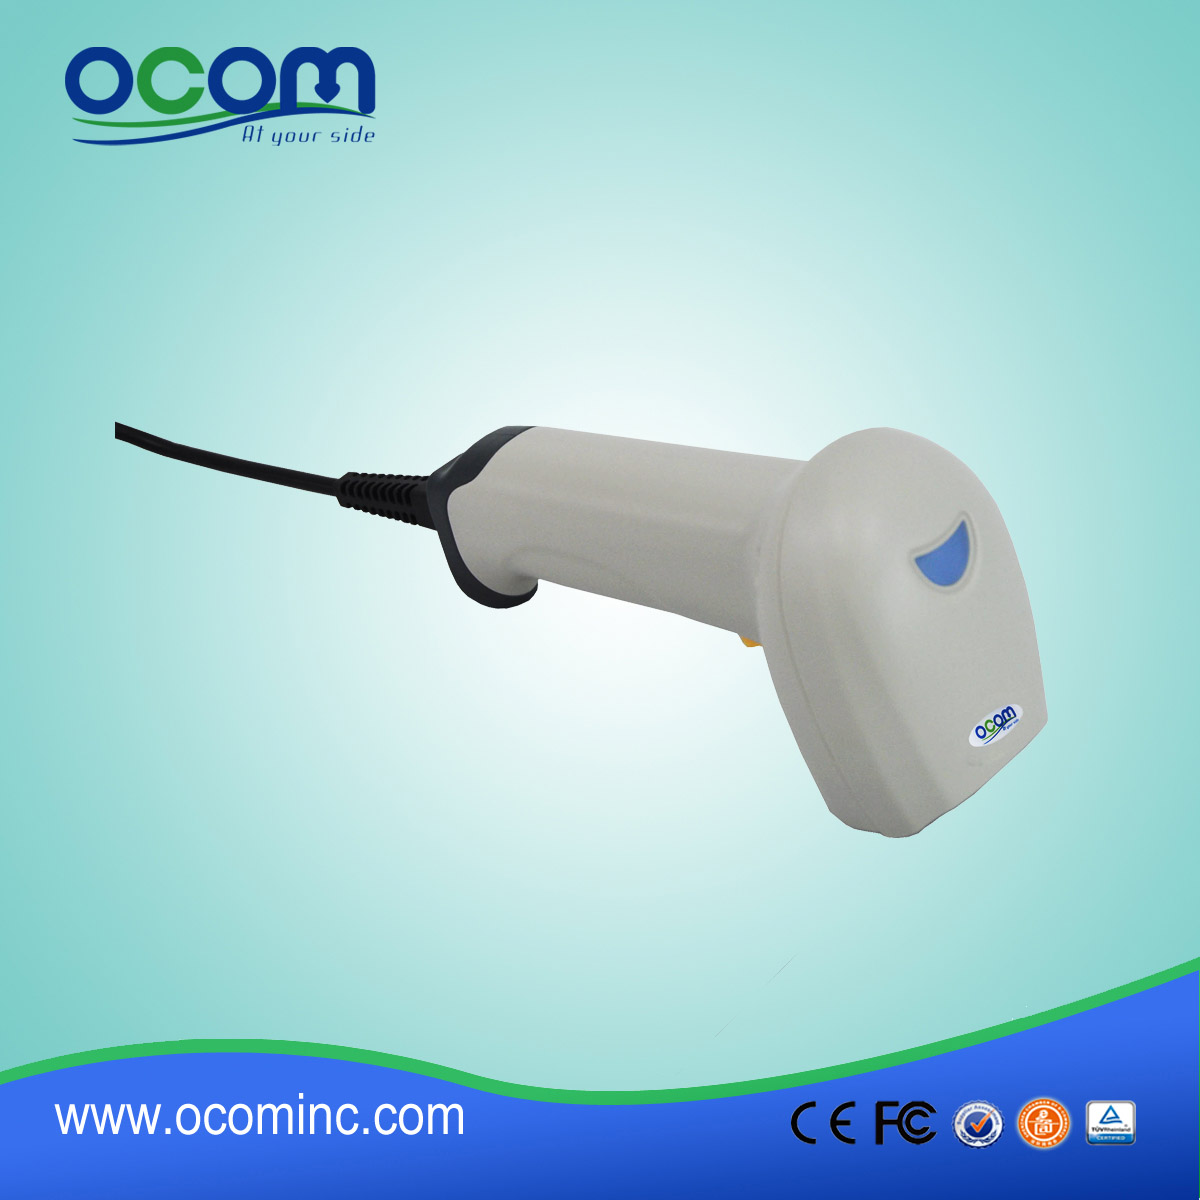 中国制造的高品质的手持式激光条码扫描器OCBS-L006